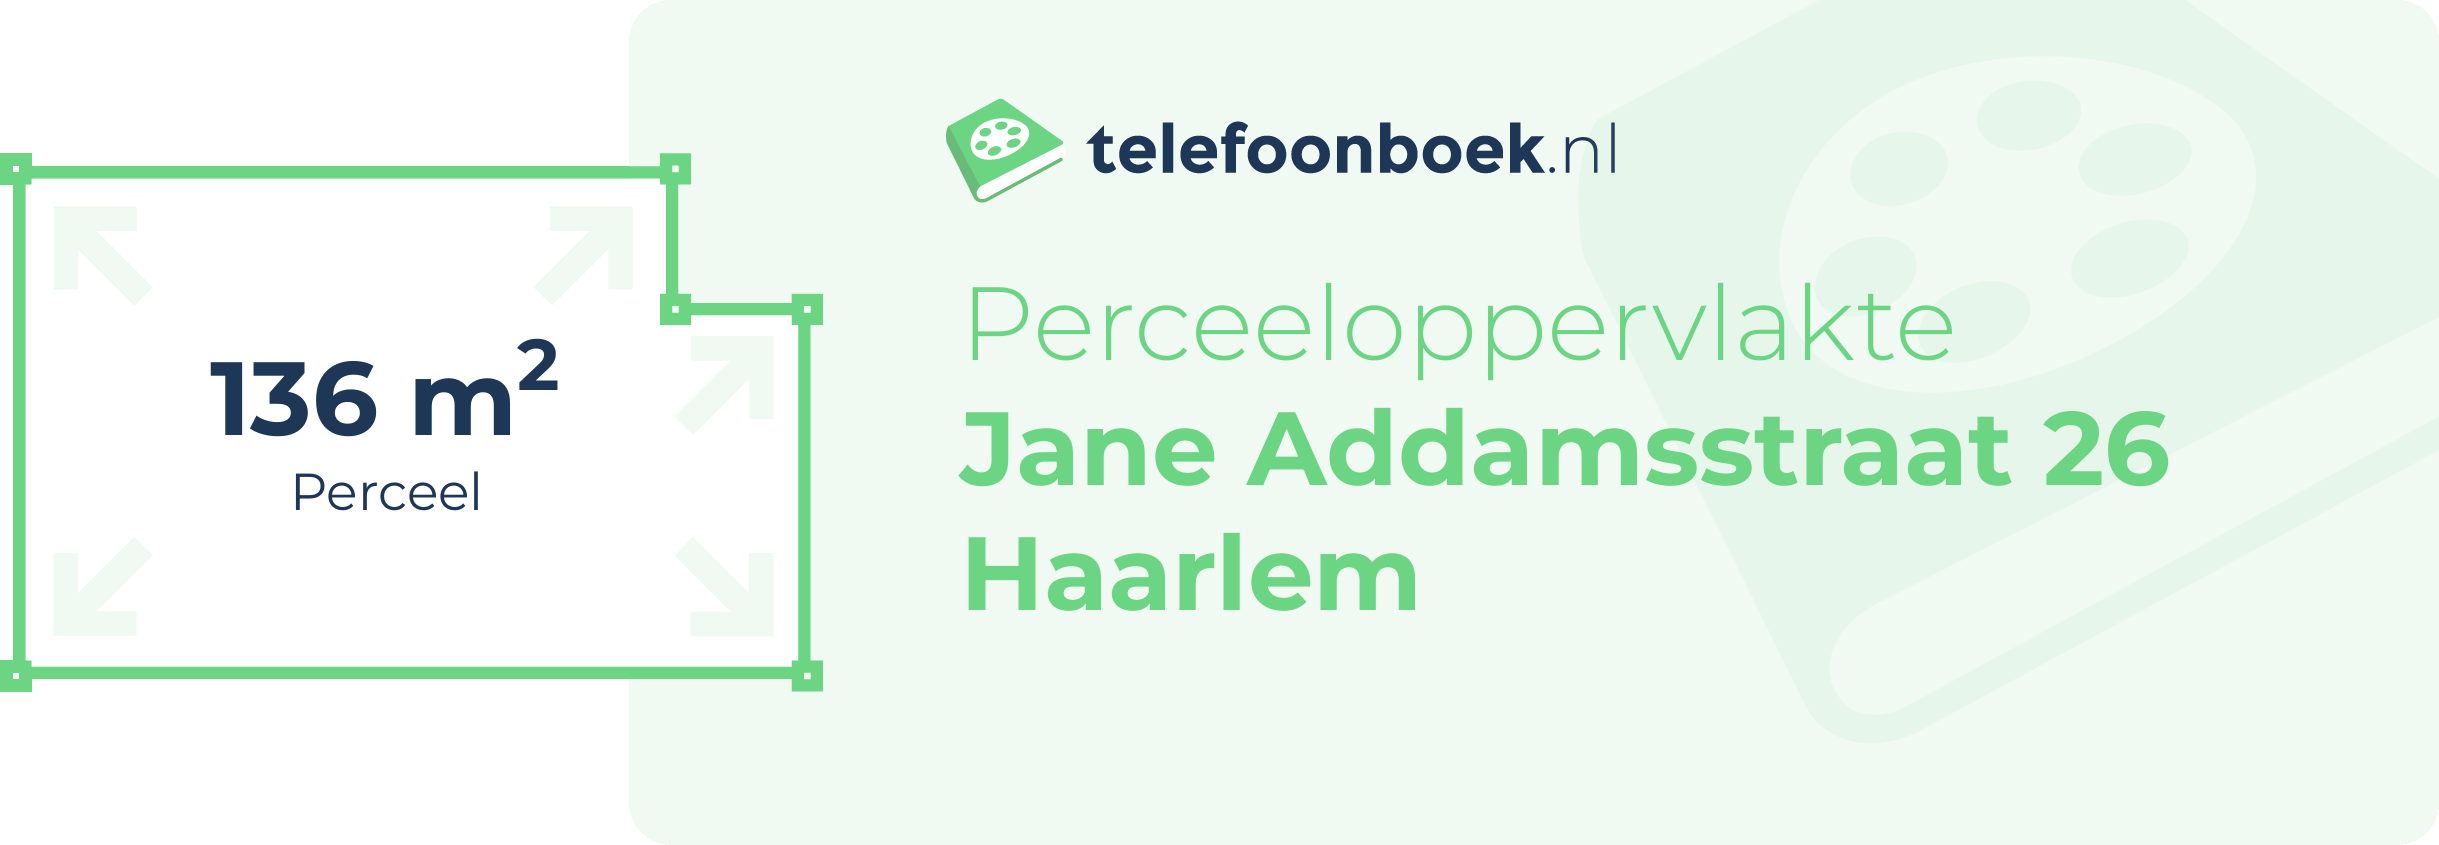 Perceeloppervlakte Jane Addamsstraat 26 Haarlem